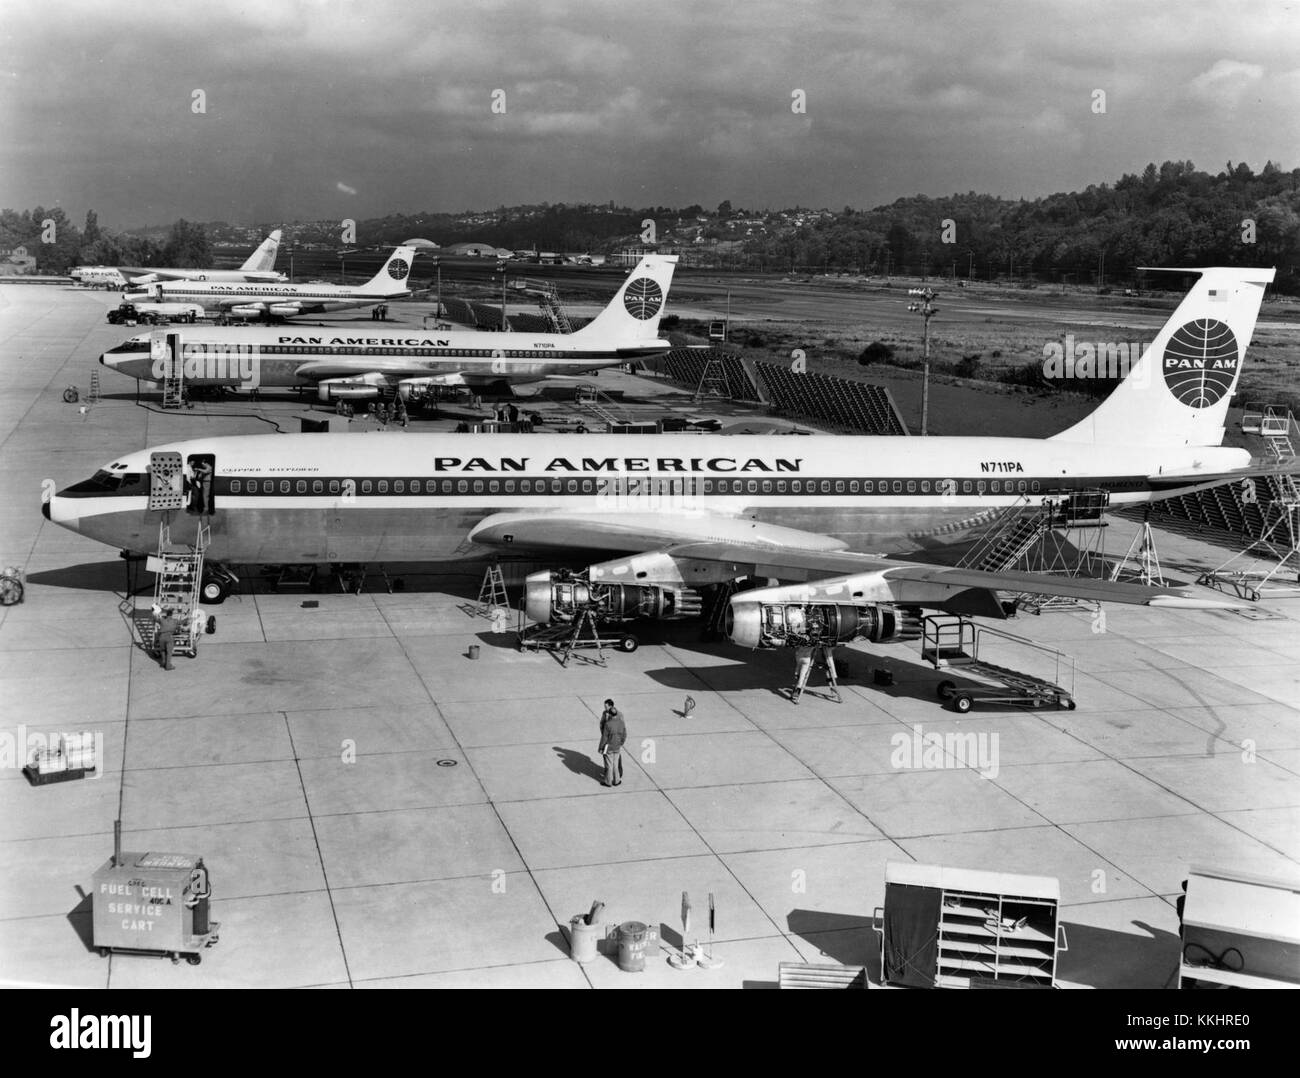 "AUF DER FLUGLINIE in Seattle, Washington, stehen die ersten drei 707-121 Flugzeuge mit Pratt & Whitney JT3C6-Triebwerken, die 1958 an Pan American World Airways geliefert werden. Das Flugzeug N711PA (Vordergrund) war der Jetliner, der am 26. Oktober 1958 mit einem Flug zwischen New York und Paris den ersten regulären US-Jet-Transport einweihte." Linke Seitenansicht von etwas über dem Boeing Modell 707-121 (r/n N711PA) auf der Boeing-Werksfluglinie in Seattle, Washington. Im Hintergrund sind r/n N710PA (Mitte) und darüber hinaus zu sehen, r/n N709PA; eine U.S. Air Force Boeing B-52 Stratofortress ist zu sehen Stockfoto